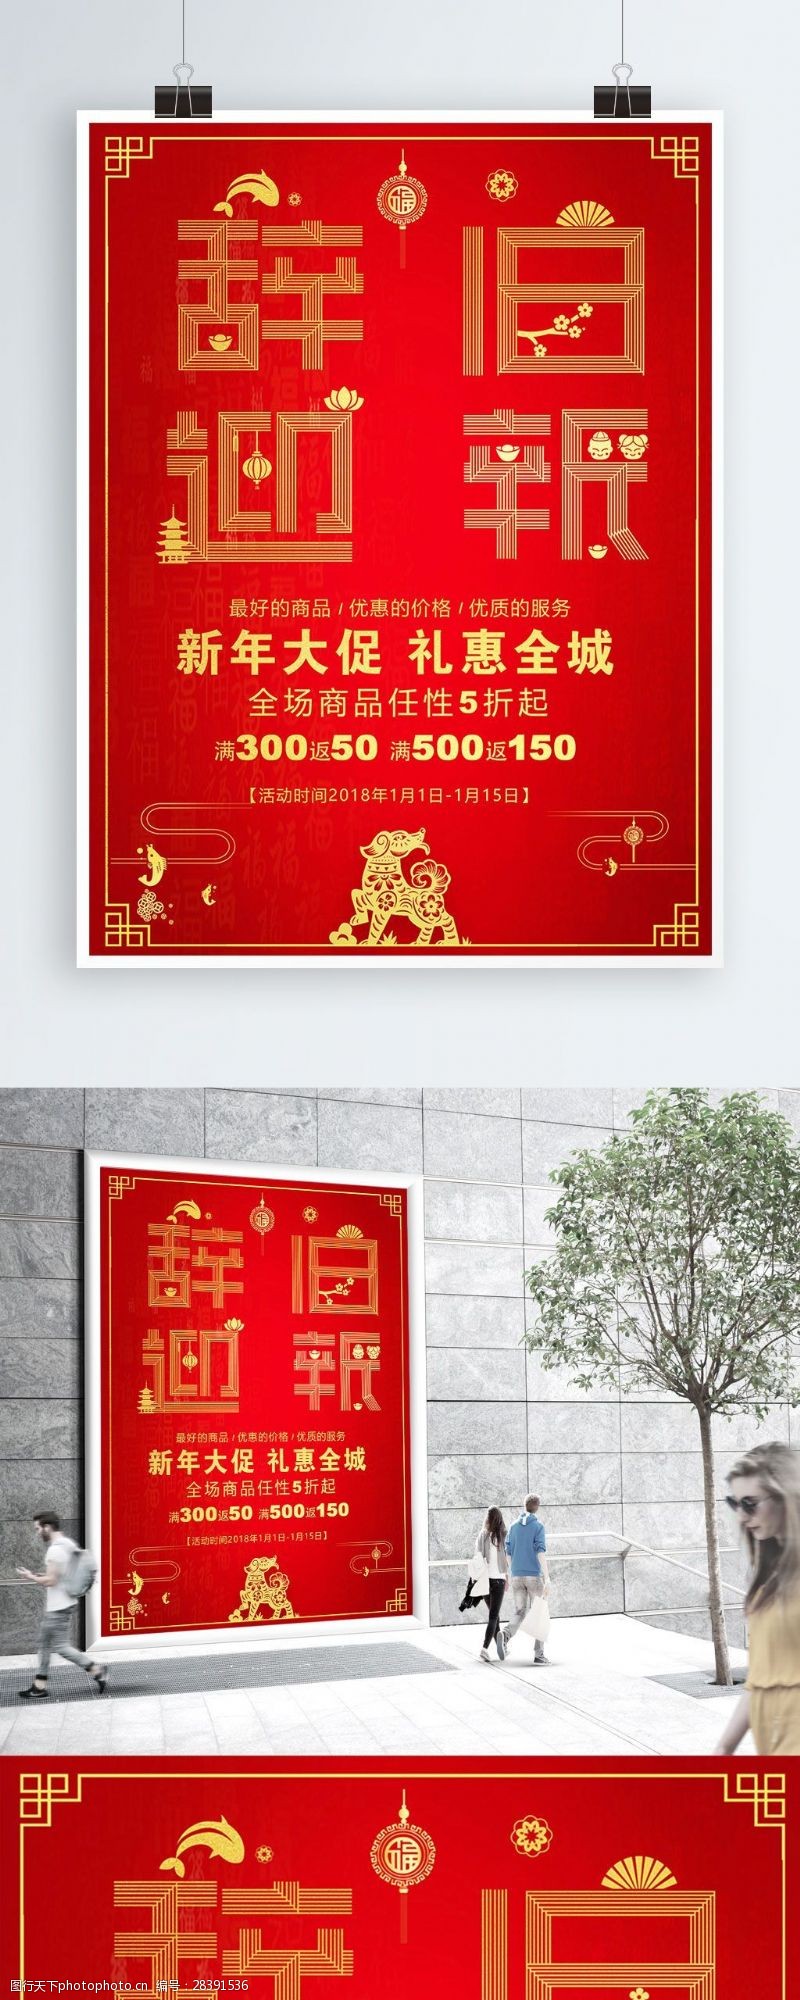 新婚快乐红色喜庆元旦春节促销商业海报设计